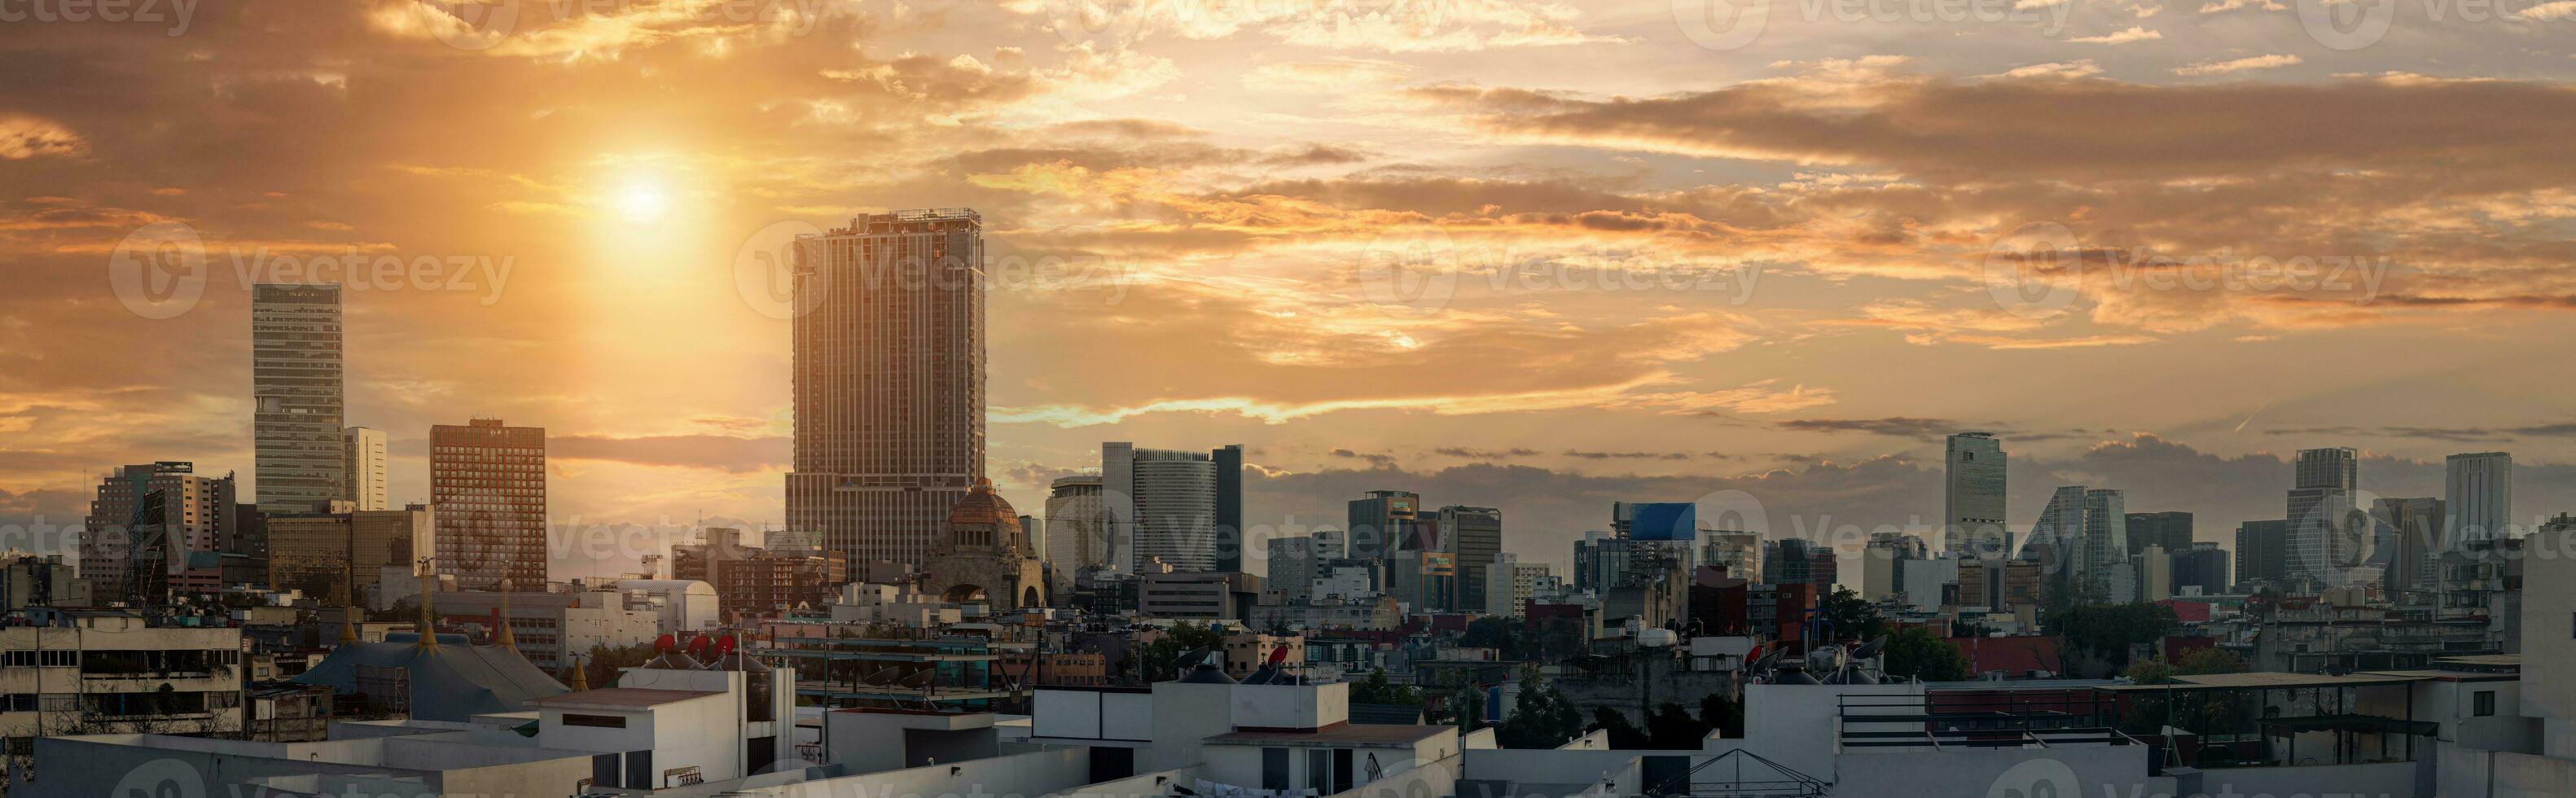 panorama- horisont se av mexico stad företag och finansiell Centrum stänga till paseo de reforma foto